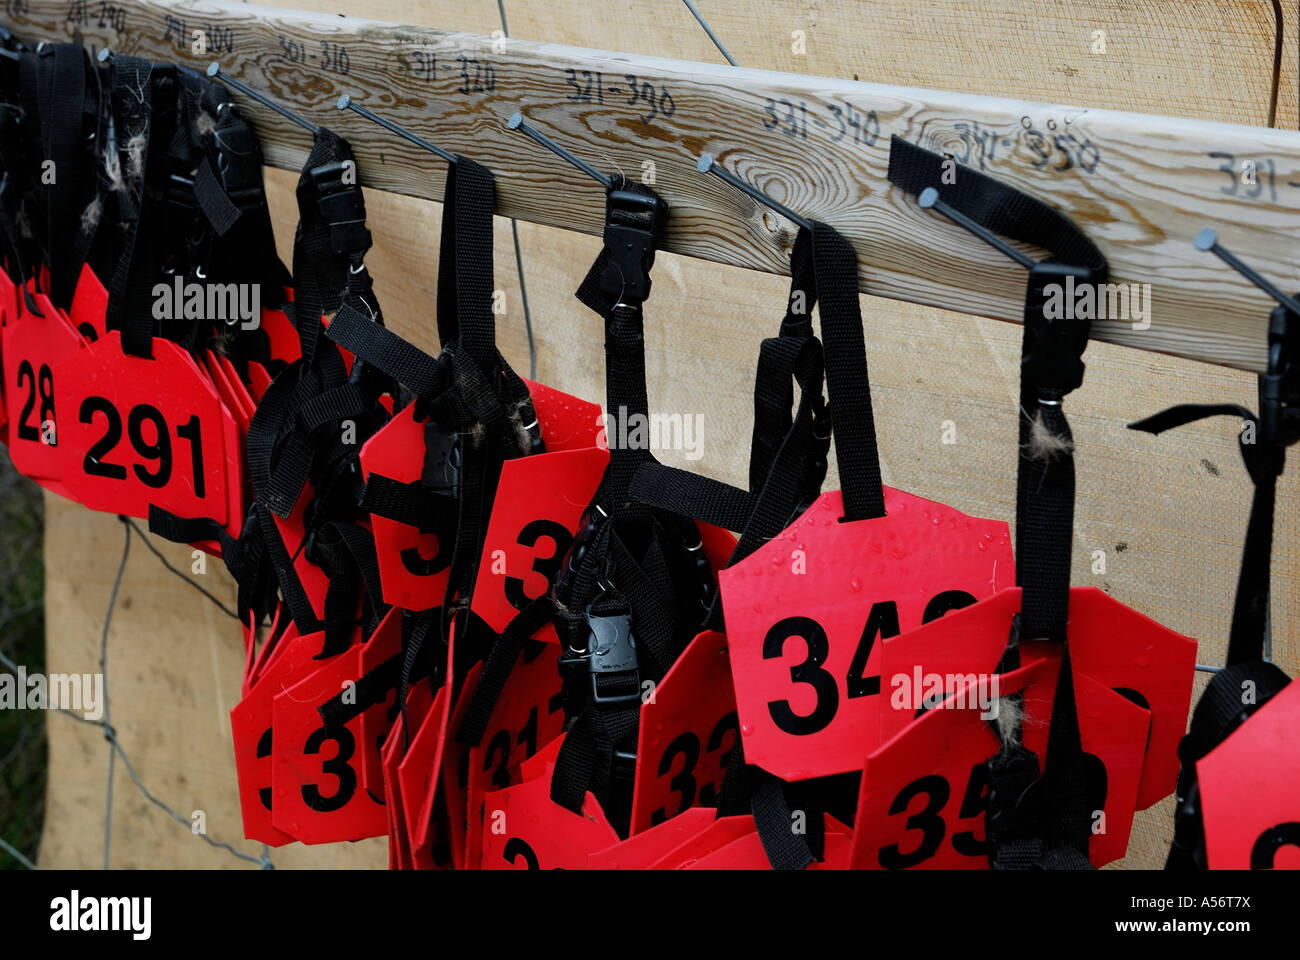 Halsbänder mit Nummern für die Rentierkälber hängen an einem Brett Stock Photo